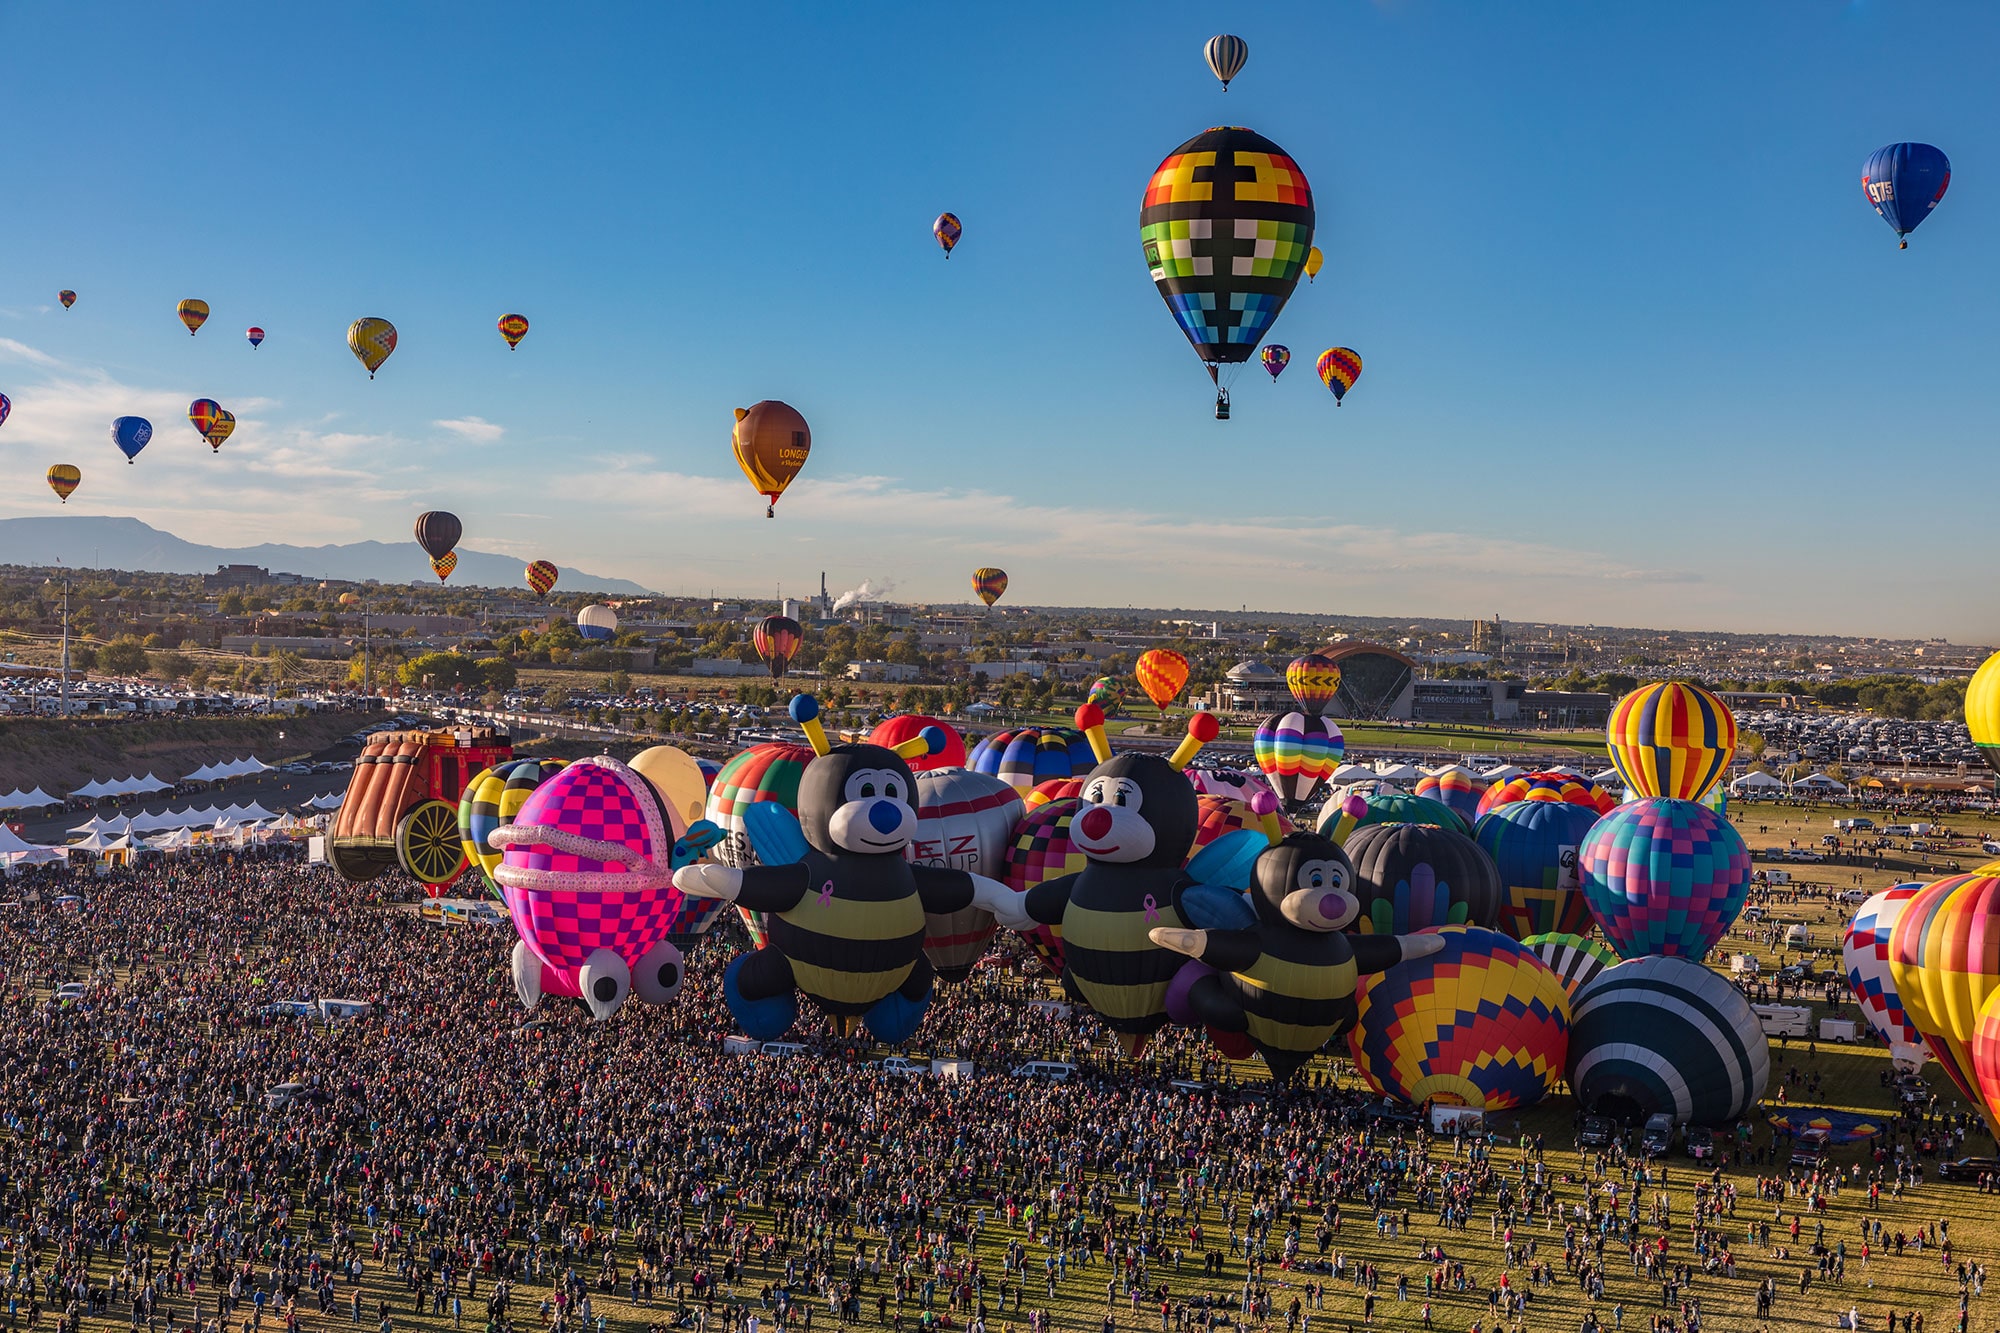 Albuquerque International Balloon Fiesta. Photos of hot-air liftoff